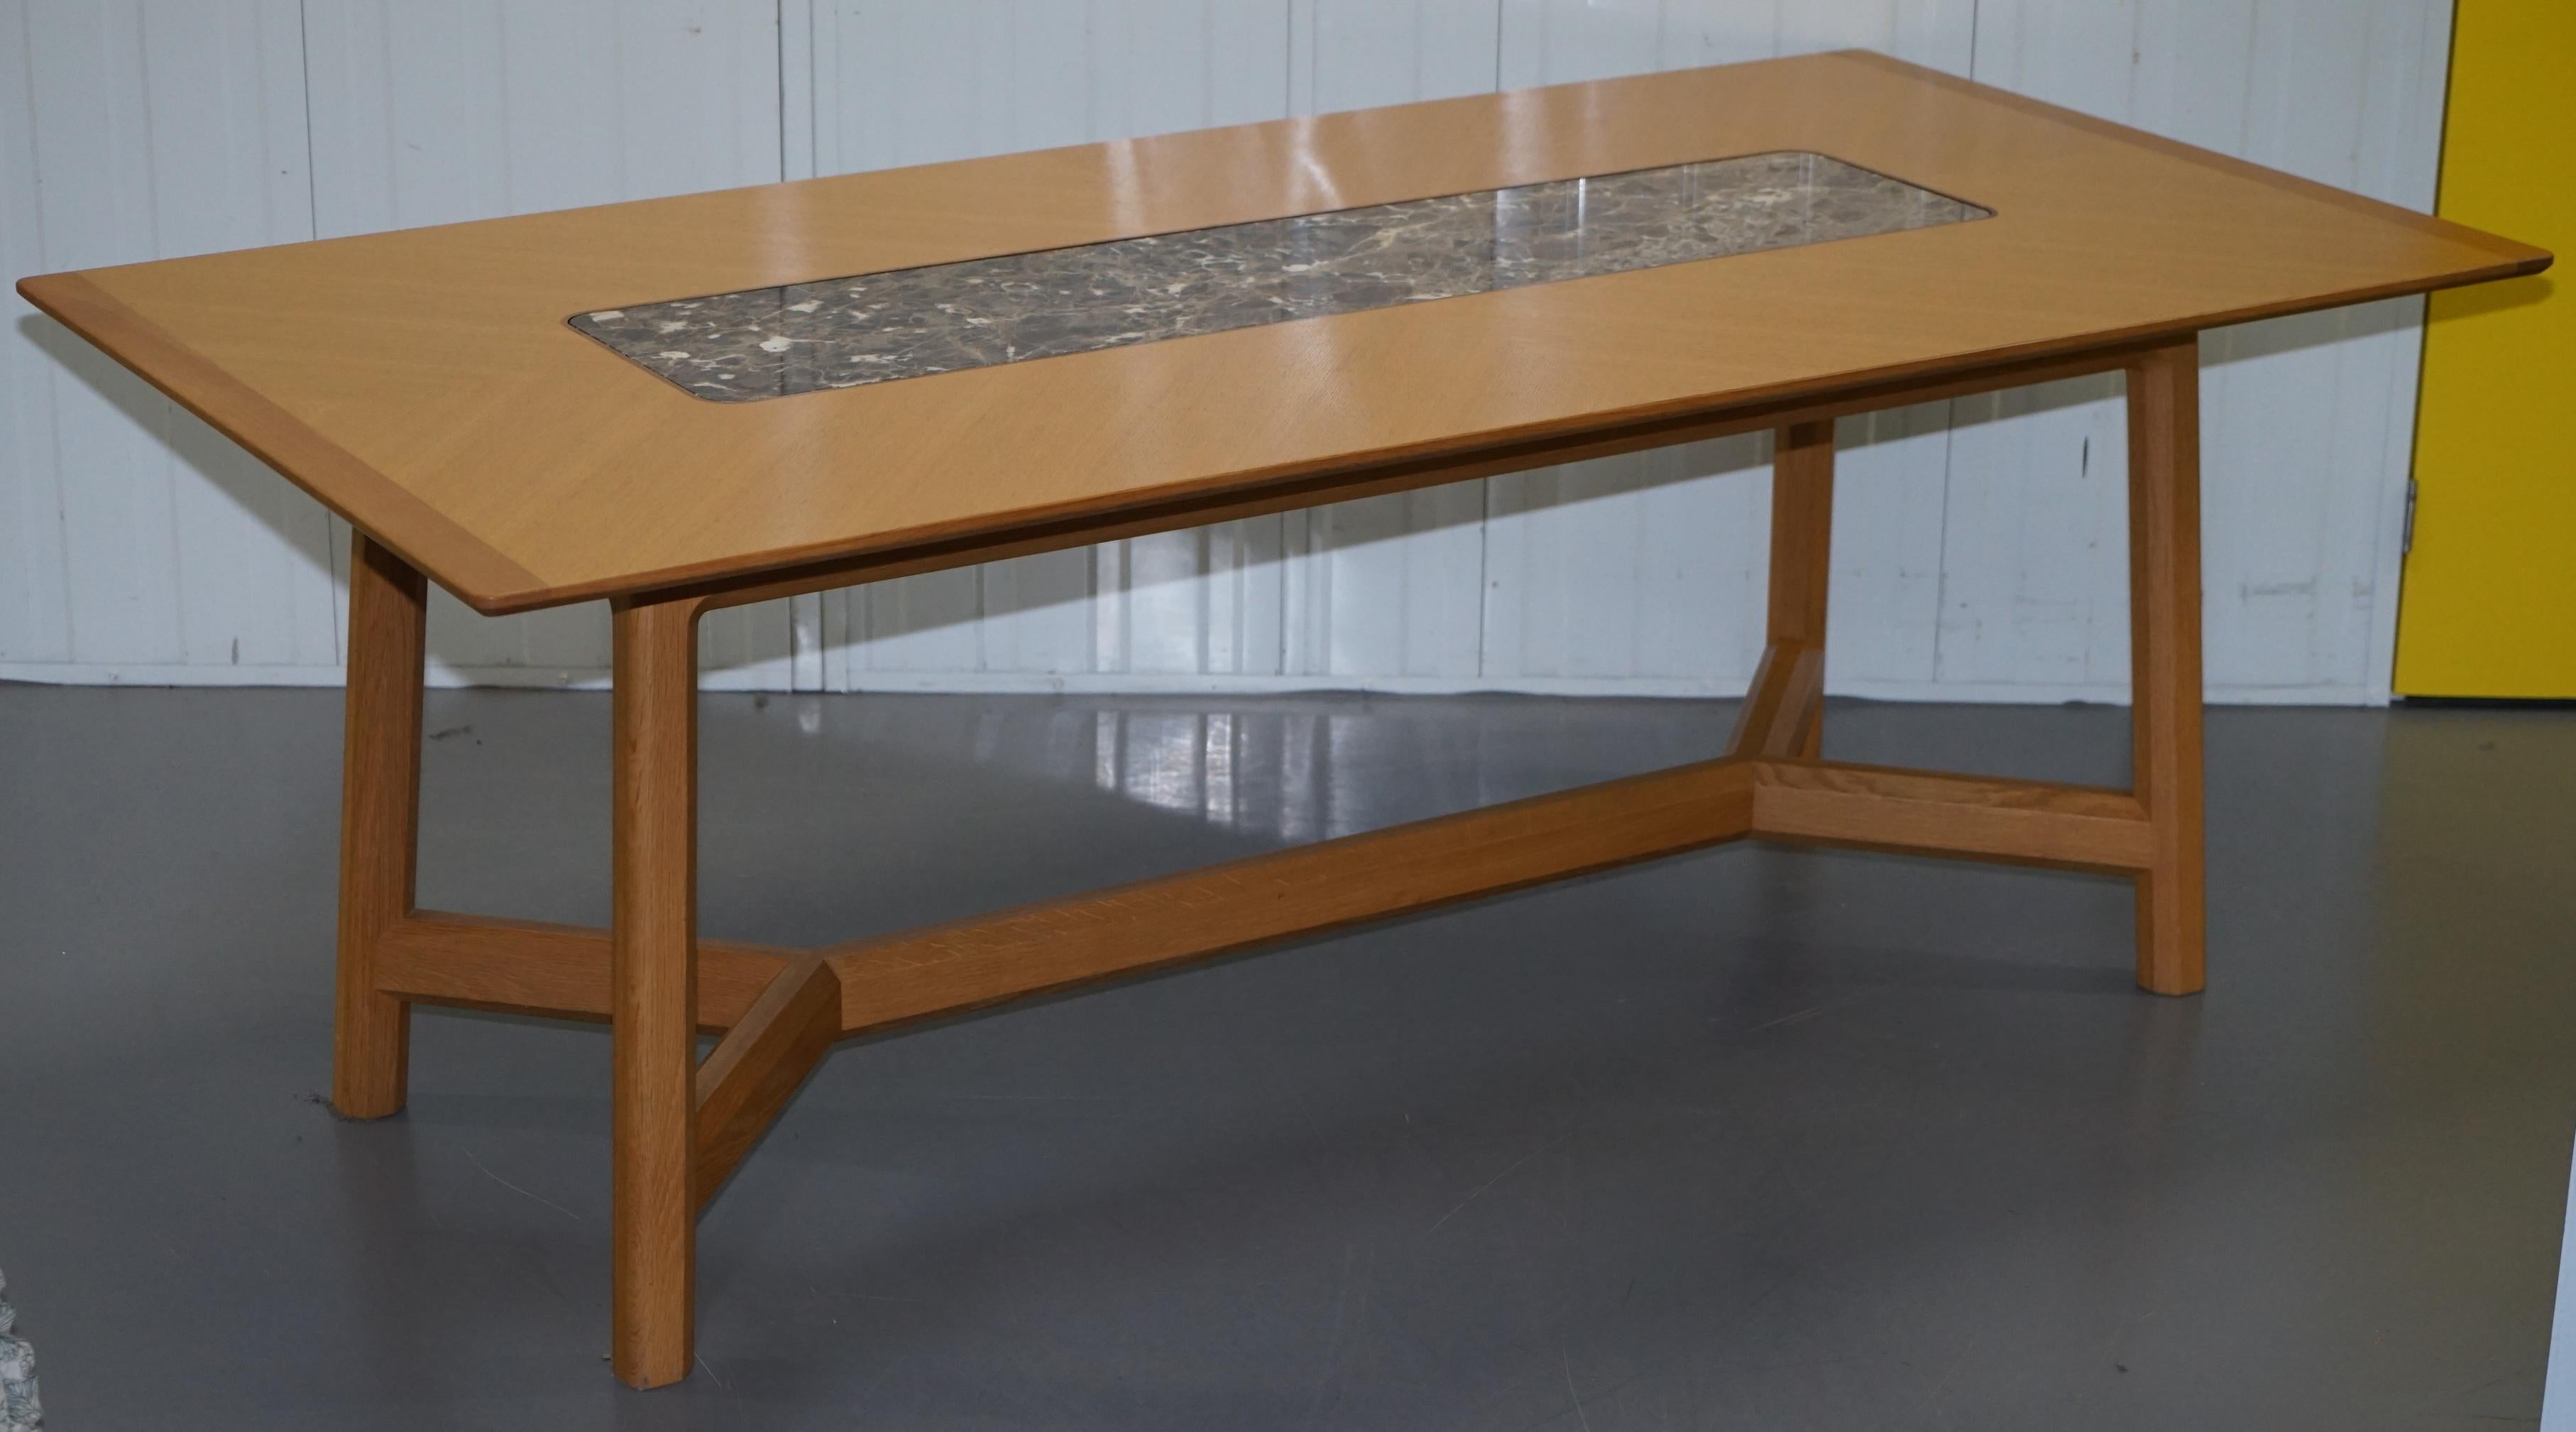 Nous avons le plaisir de proposer à la vente cette superbe table de salle à manger David Linley Newlyn collection en sycomore massif avec insert en marbre Hayrake RRP £14,500

Une table très belle et bien faite, l'insert en marbre est parfait pour